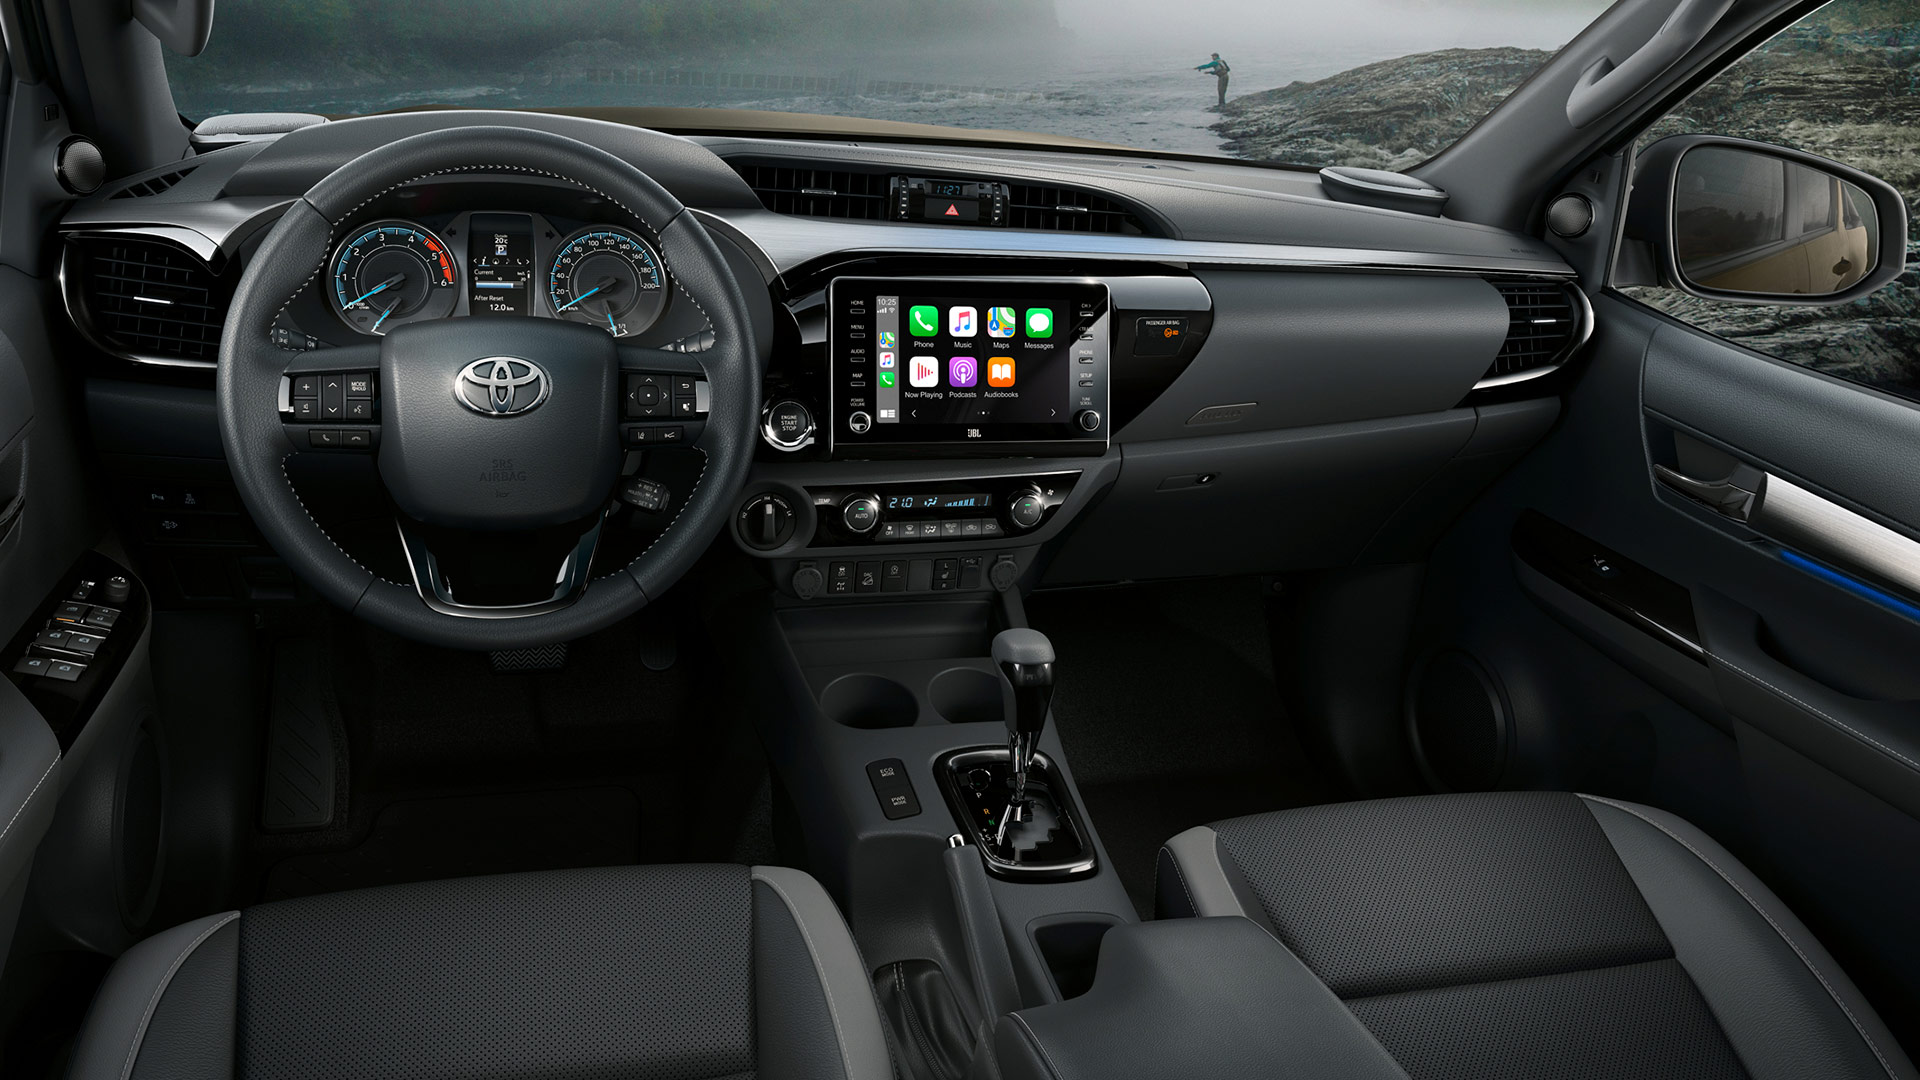 Toyota Hilux 2020 fiyatları güncellendi! Pek fark yok